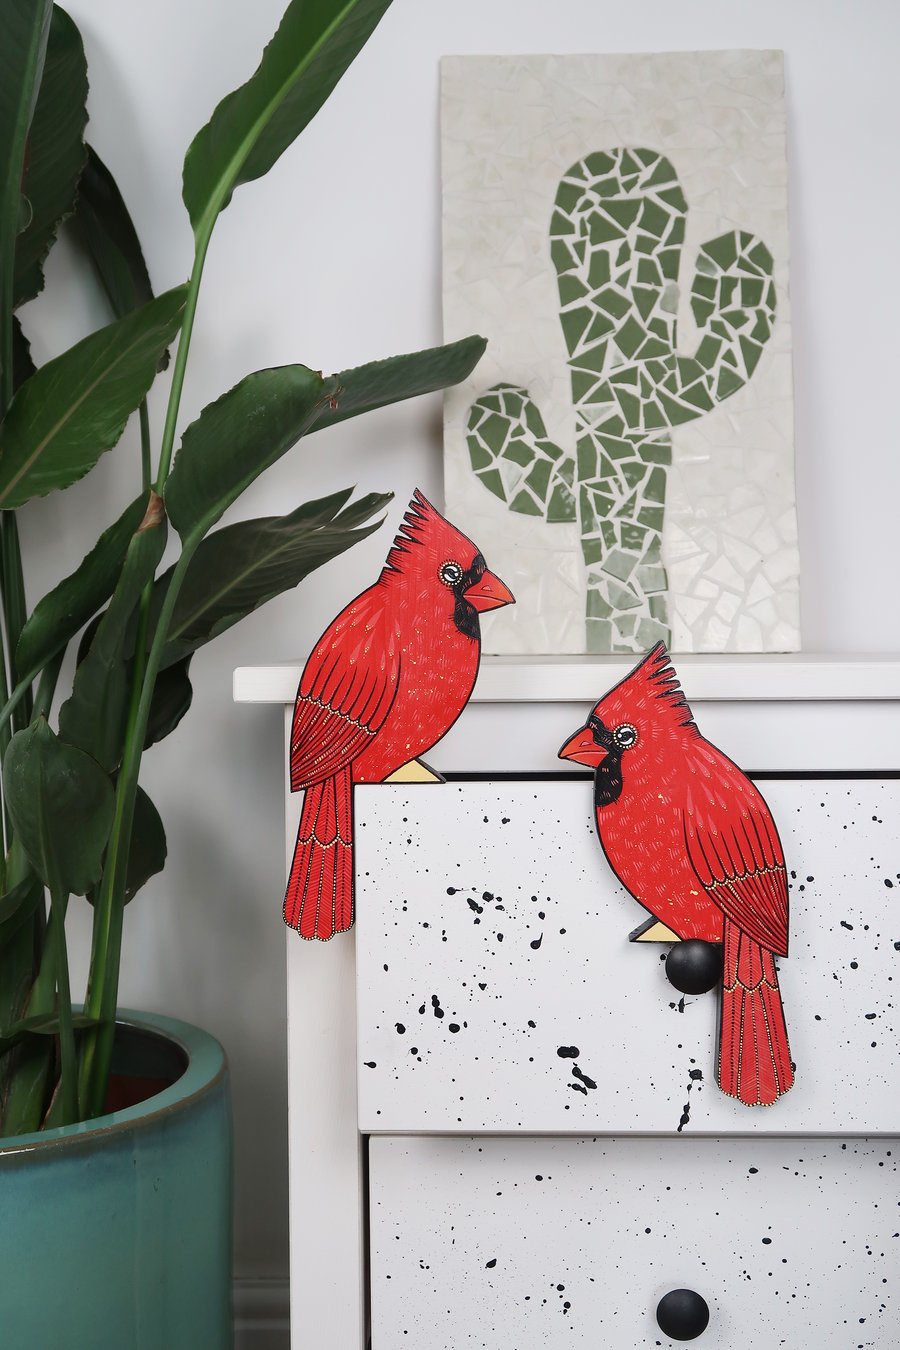 Red cardinal door topper, wooden bird decoration for door, hand painted.